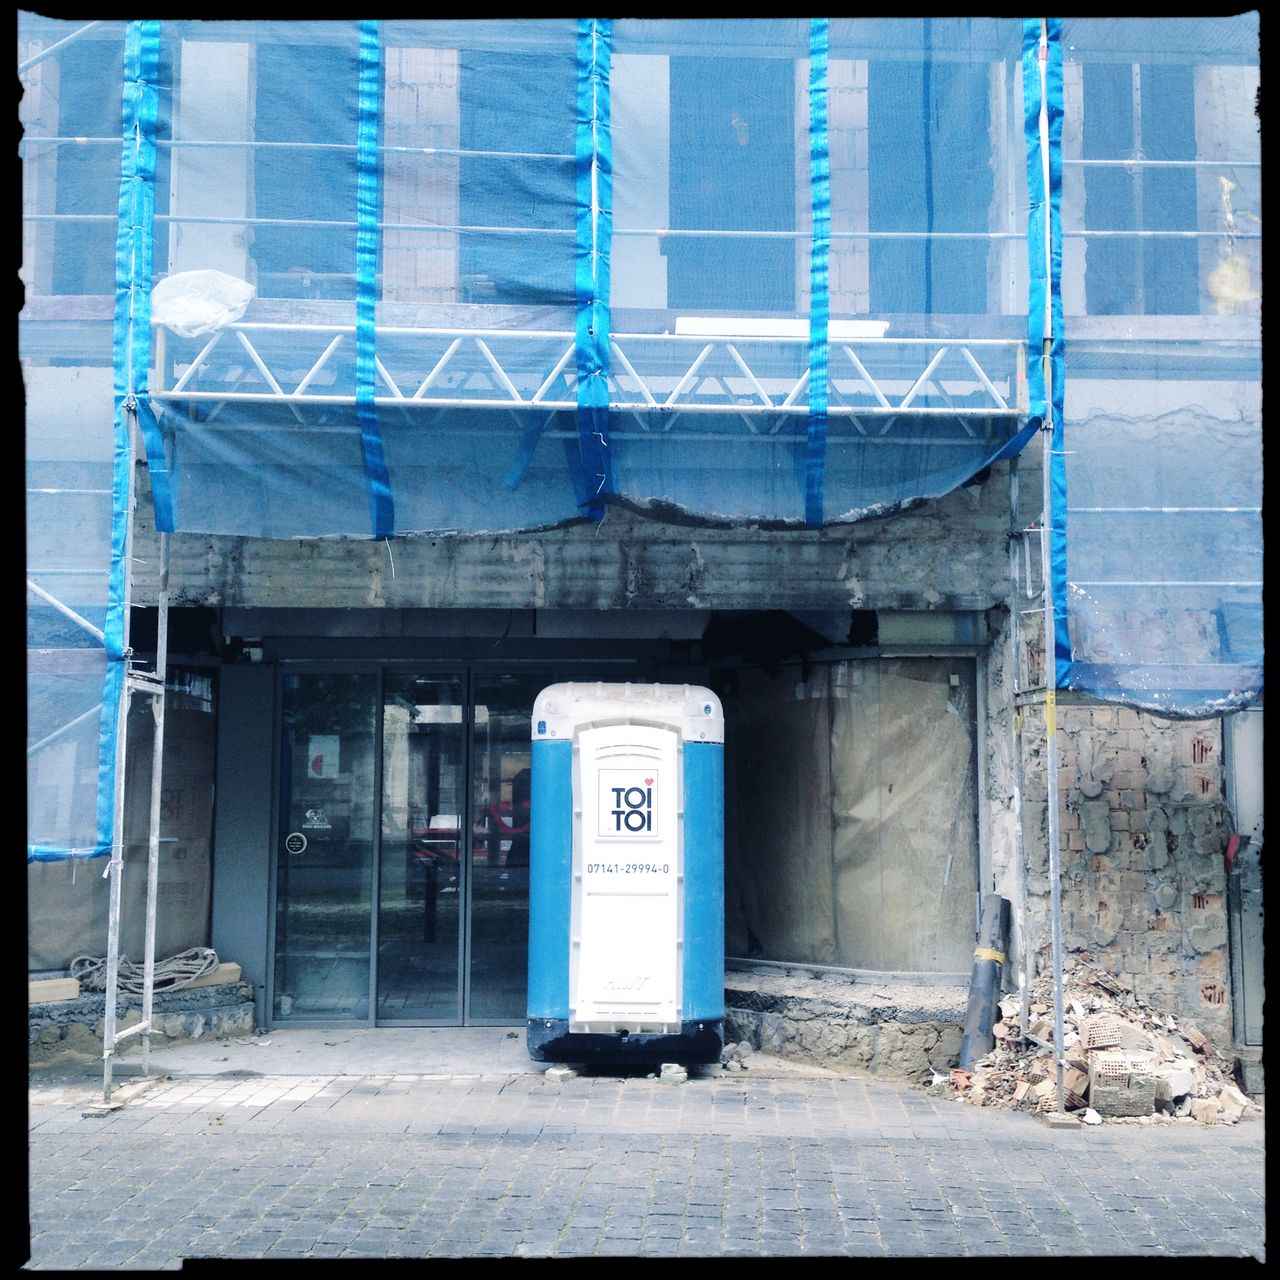 Ein Toi Toi Mietklo vor einer Baustelle. Das Portal wirkt wie eine Bühne. Rechts und links ist das Baugerüst mit Netzen abgehängt.